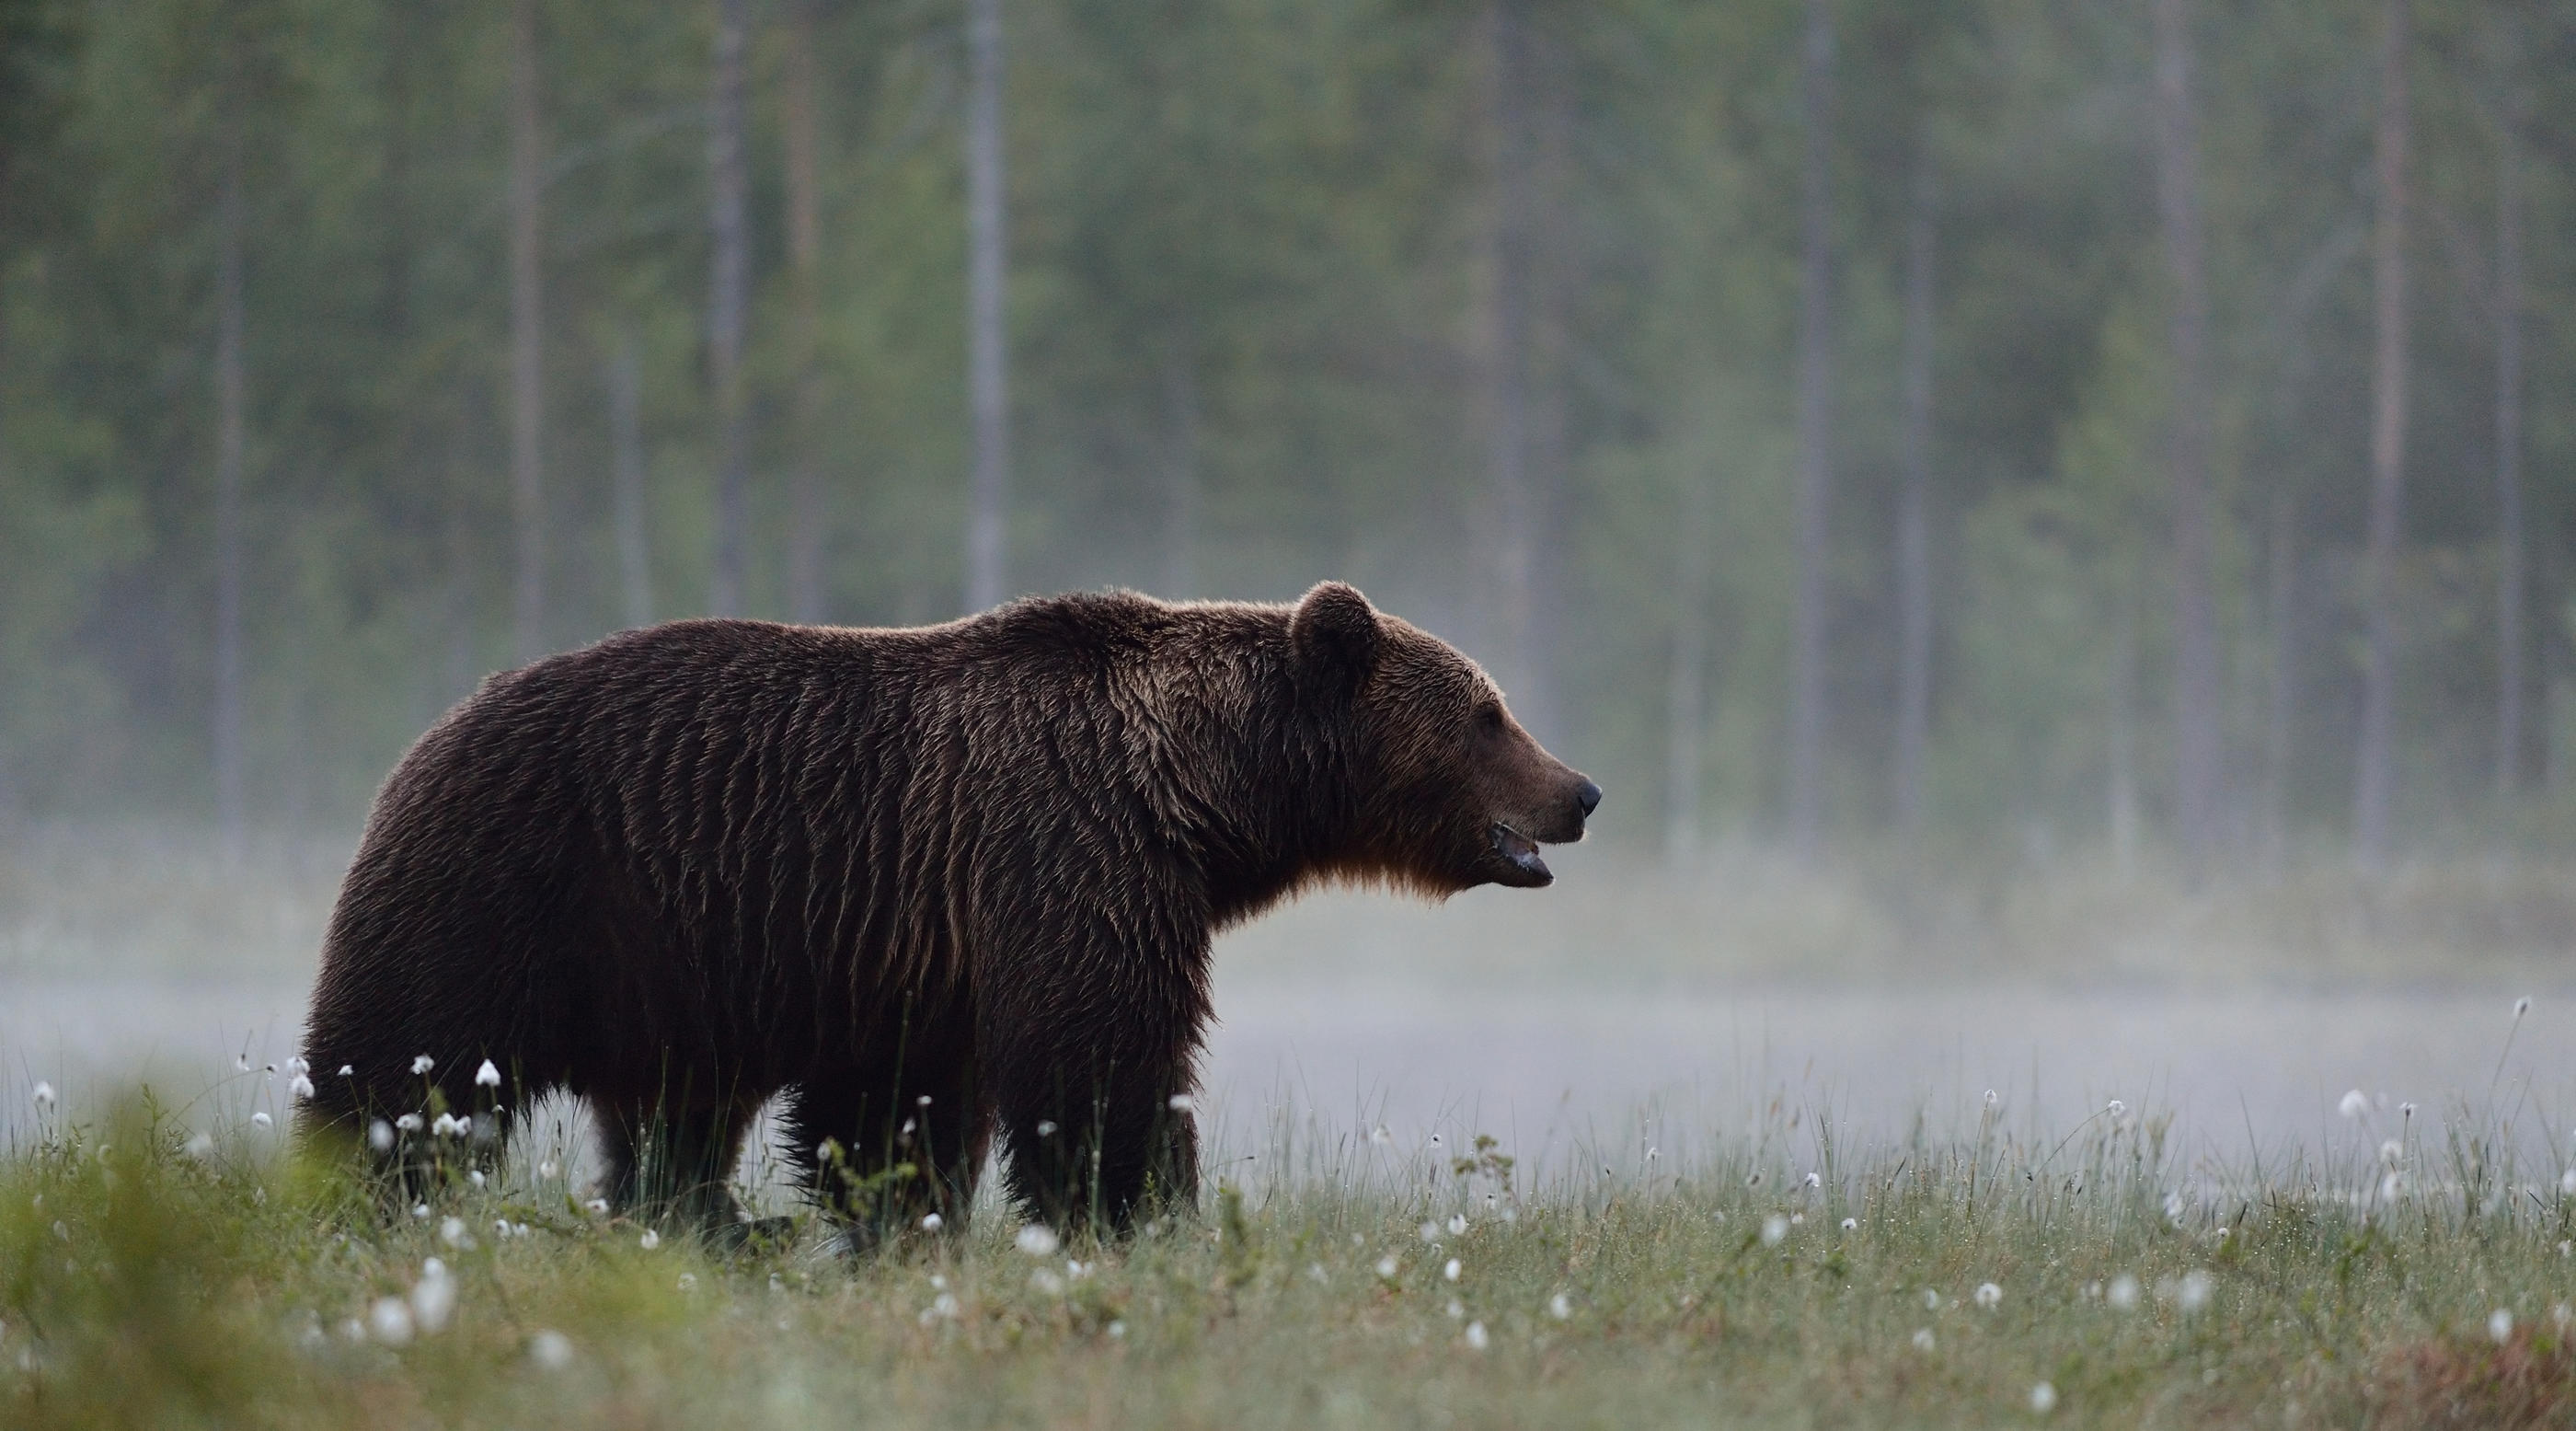 Le Réseau Ours Brun estime indispensable d’effectuer de nouveaux lâchers d'ours pour éviter les risques de consanguinité et pérenniser l’espèce, réintroduite en 2013. Istock/ErikMandre